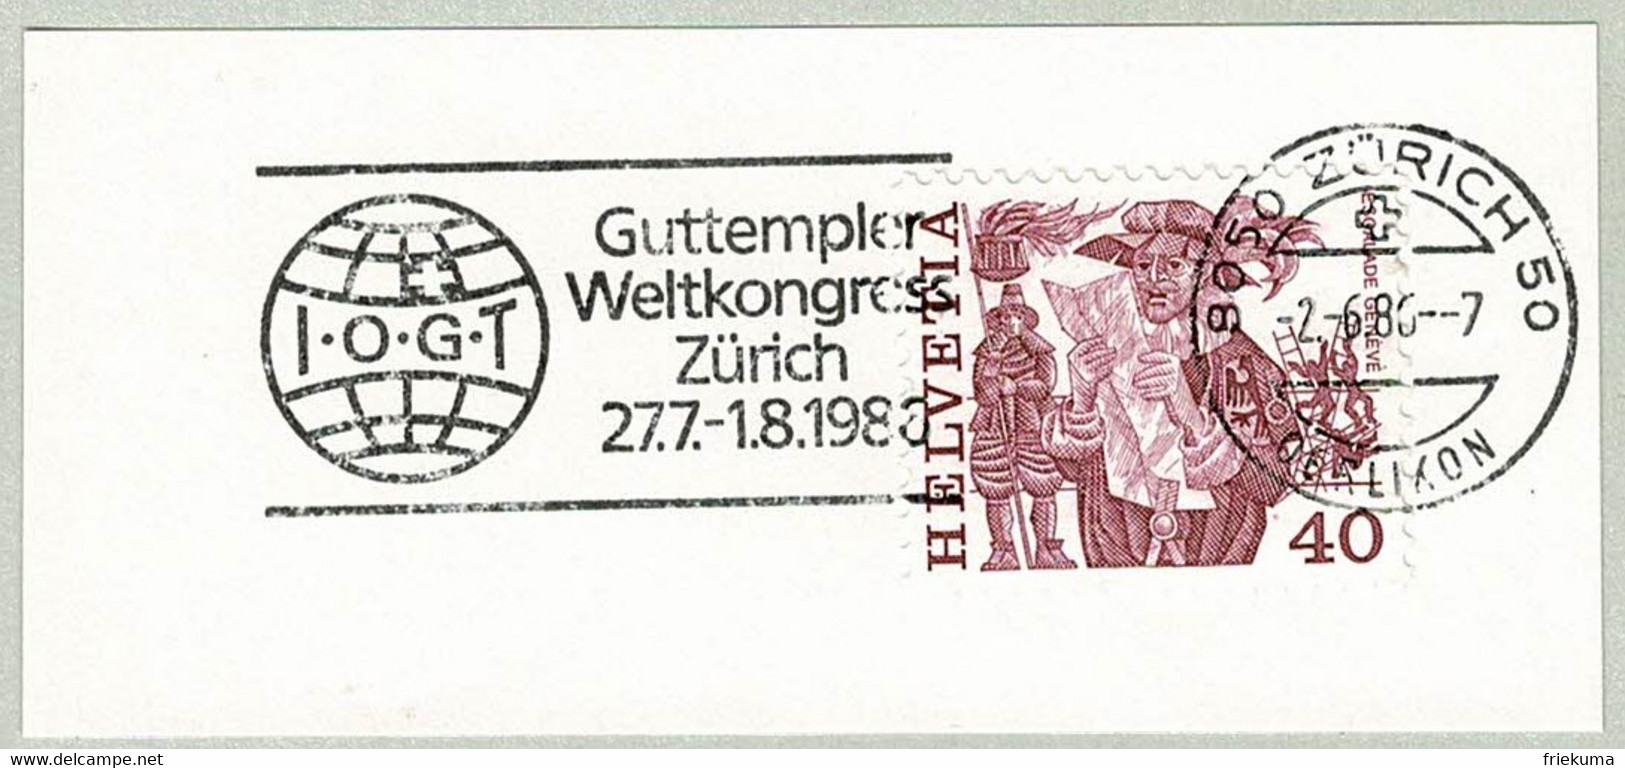 Schweiz / Helvetia 1986, Flaggenstempel Guttempler Weltkongress Zürich, Abstinenz, Alkohol, Drogen, Good Templars - Drugs